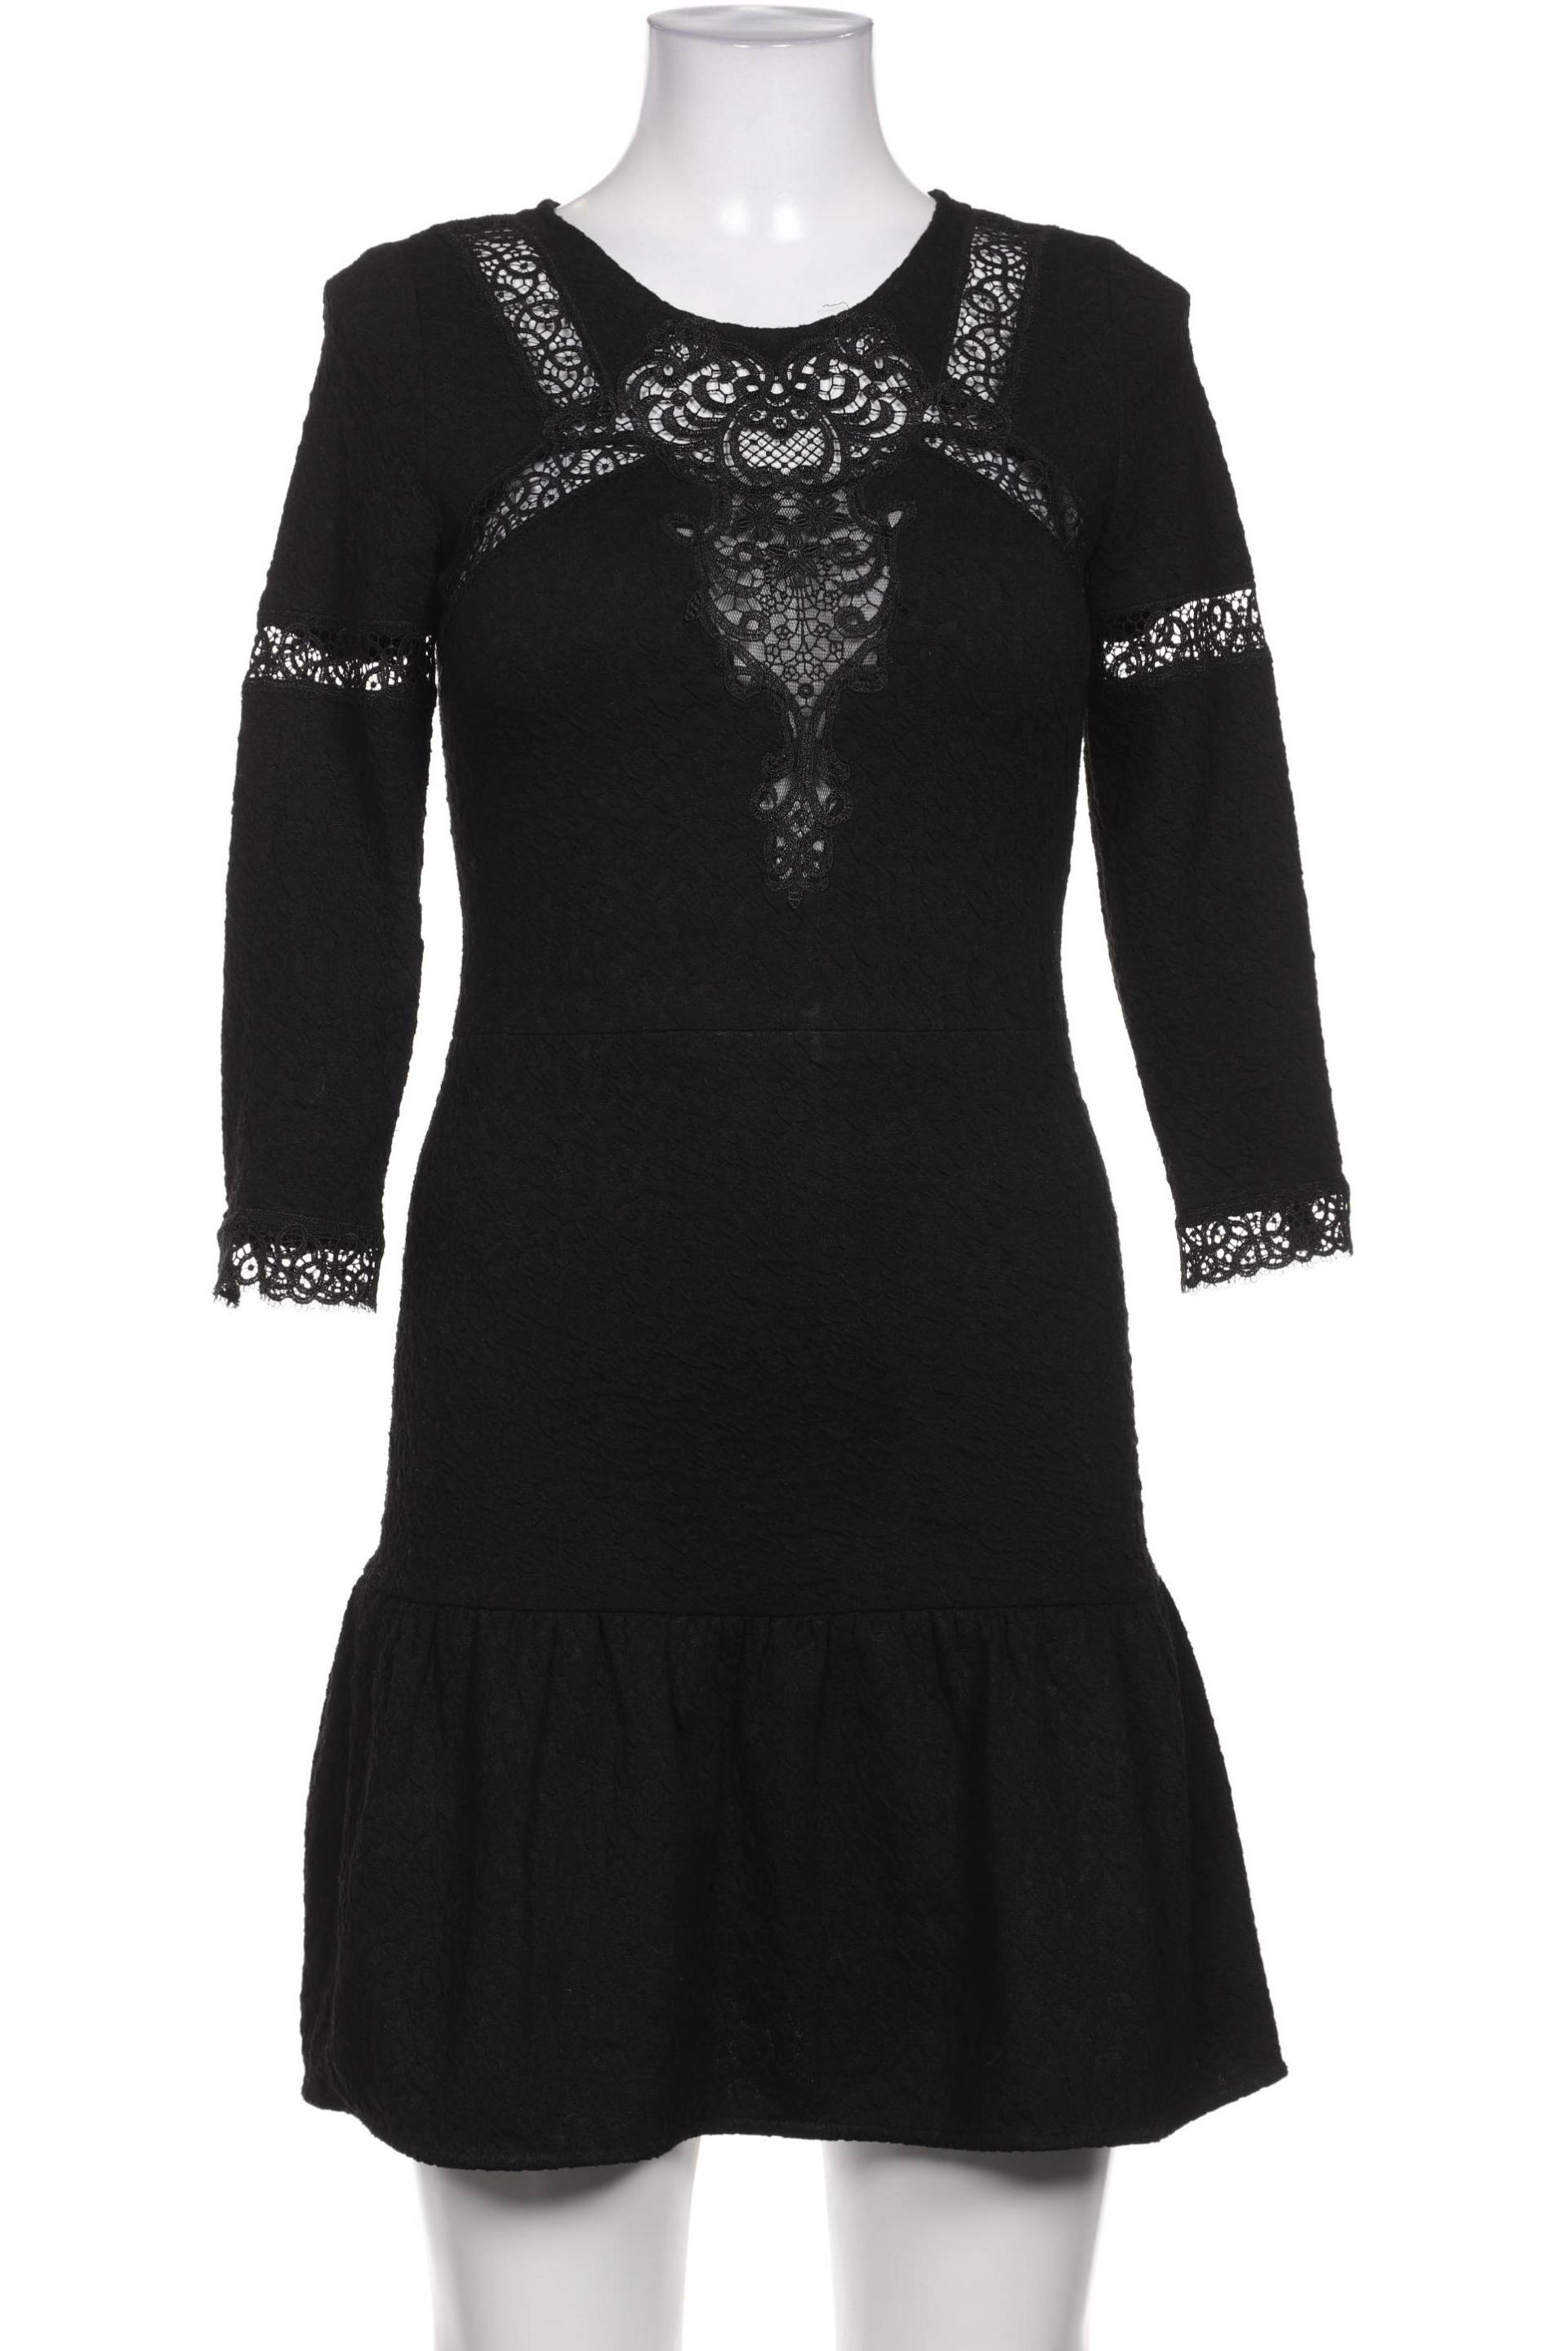 The Kooples Damen Kleid, schwarz von The Kooples